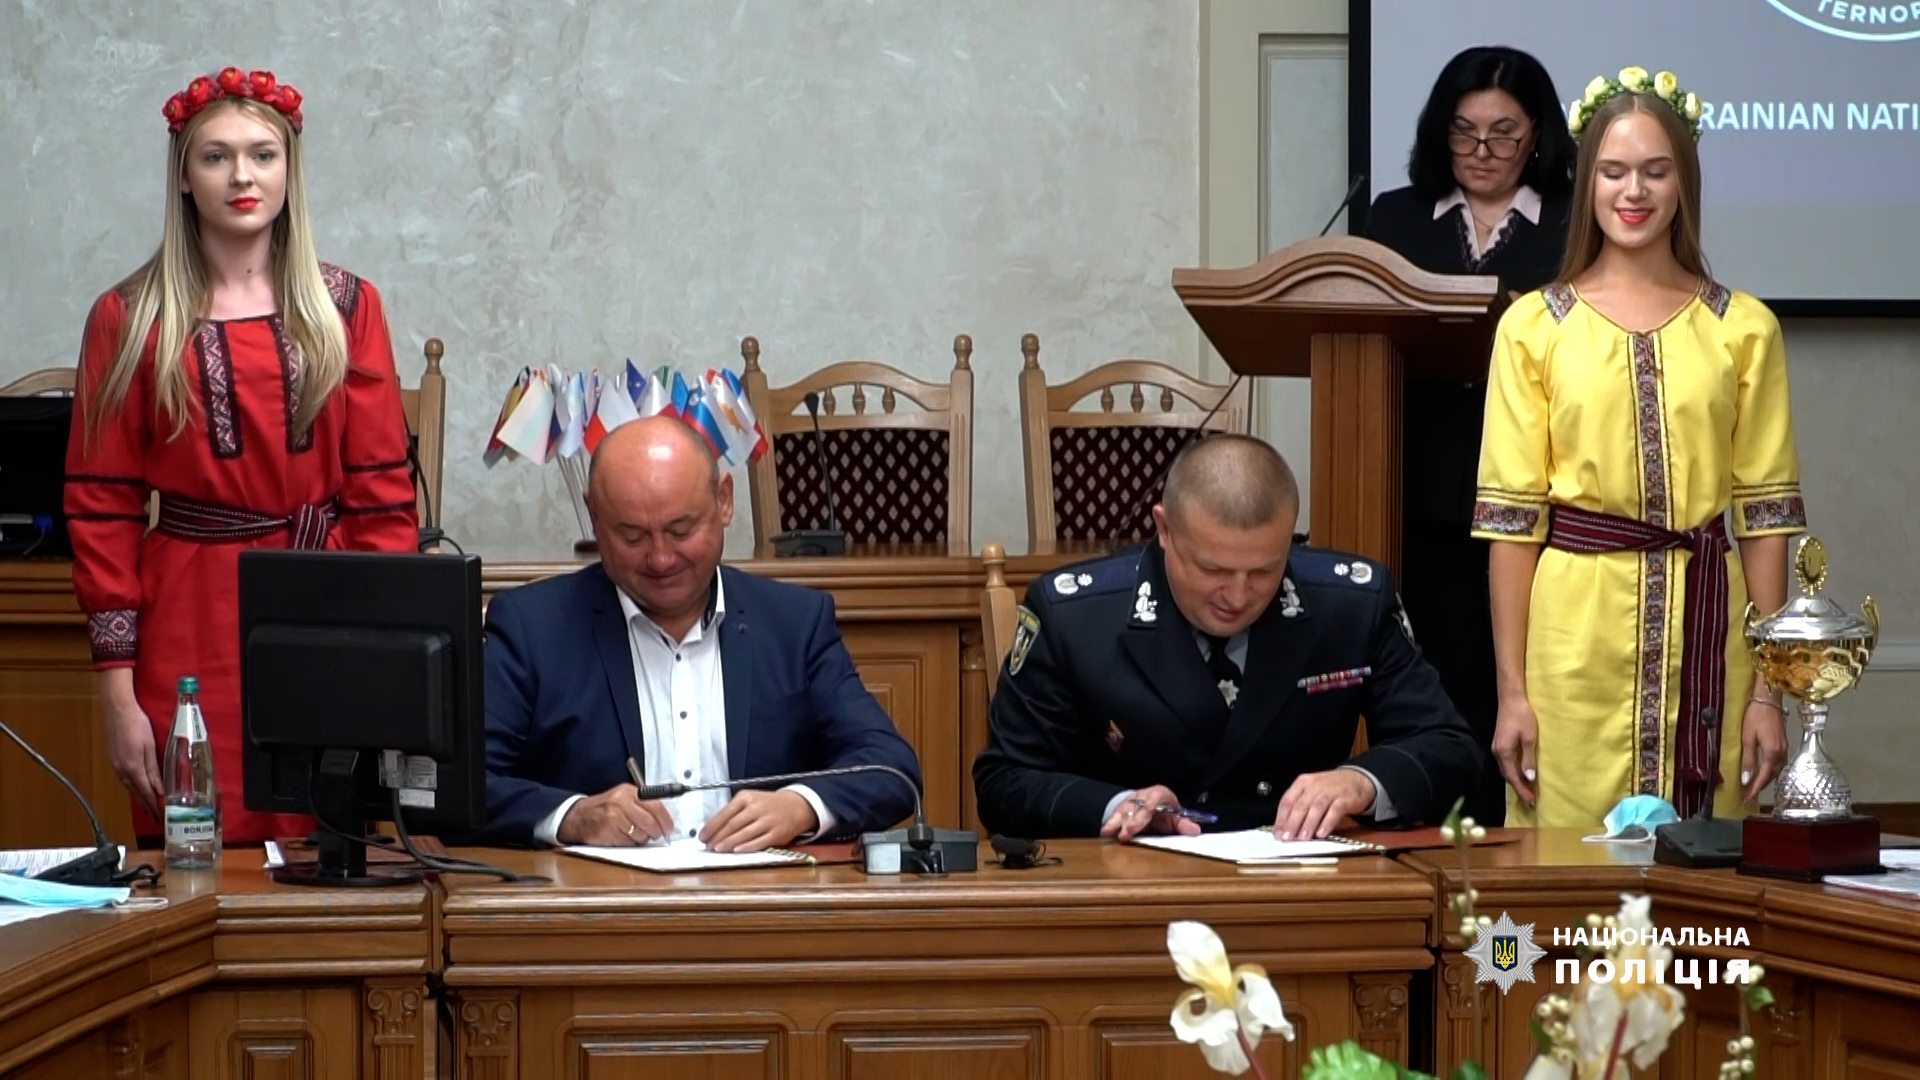 Тернопільські правоохоронці підписали меморандум про співпрацю із Західноукраїнським національним університетом